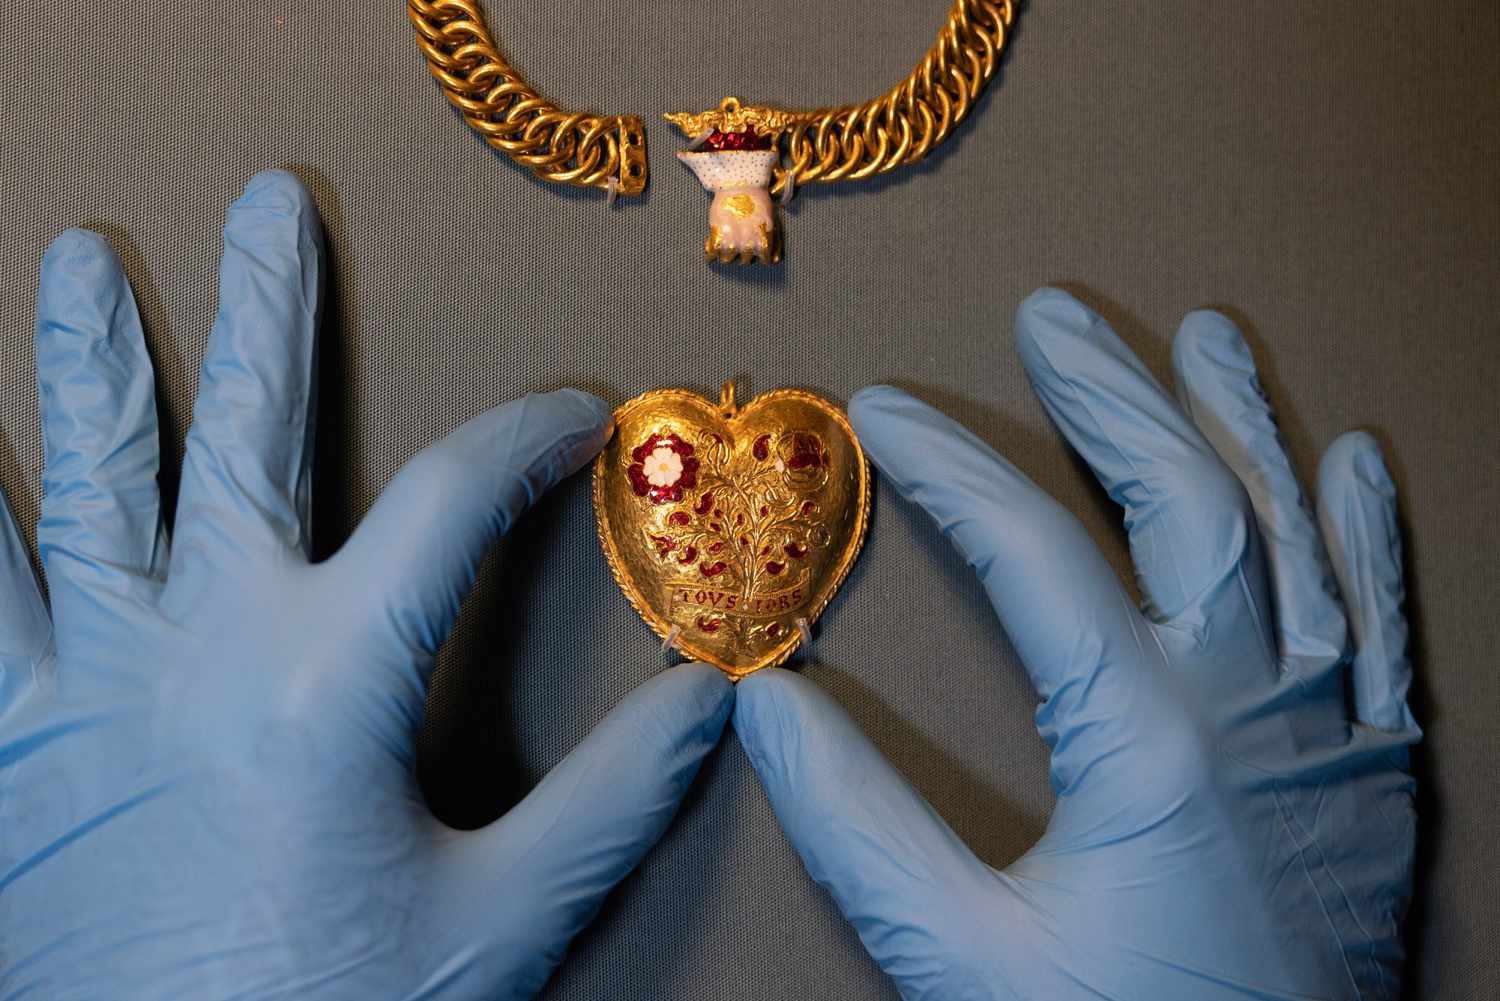 कैफे के मालिक ने फील्ड में राजा हेनरी अष्टम से जुड़े दिल के आकार के लटकन को उजागर किया: 'वंस इन ए जेनरेशन फाइंड'